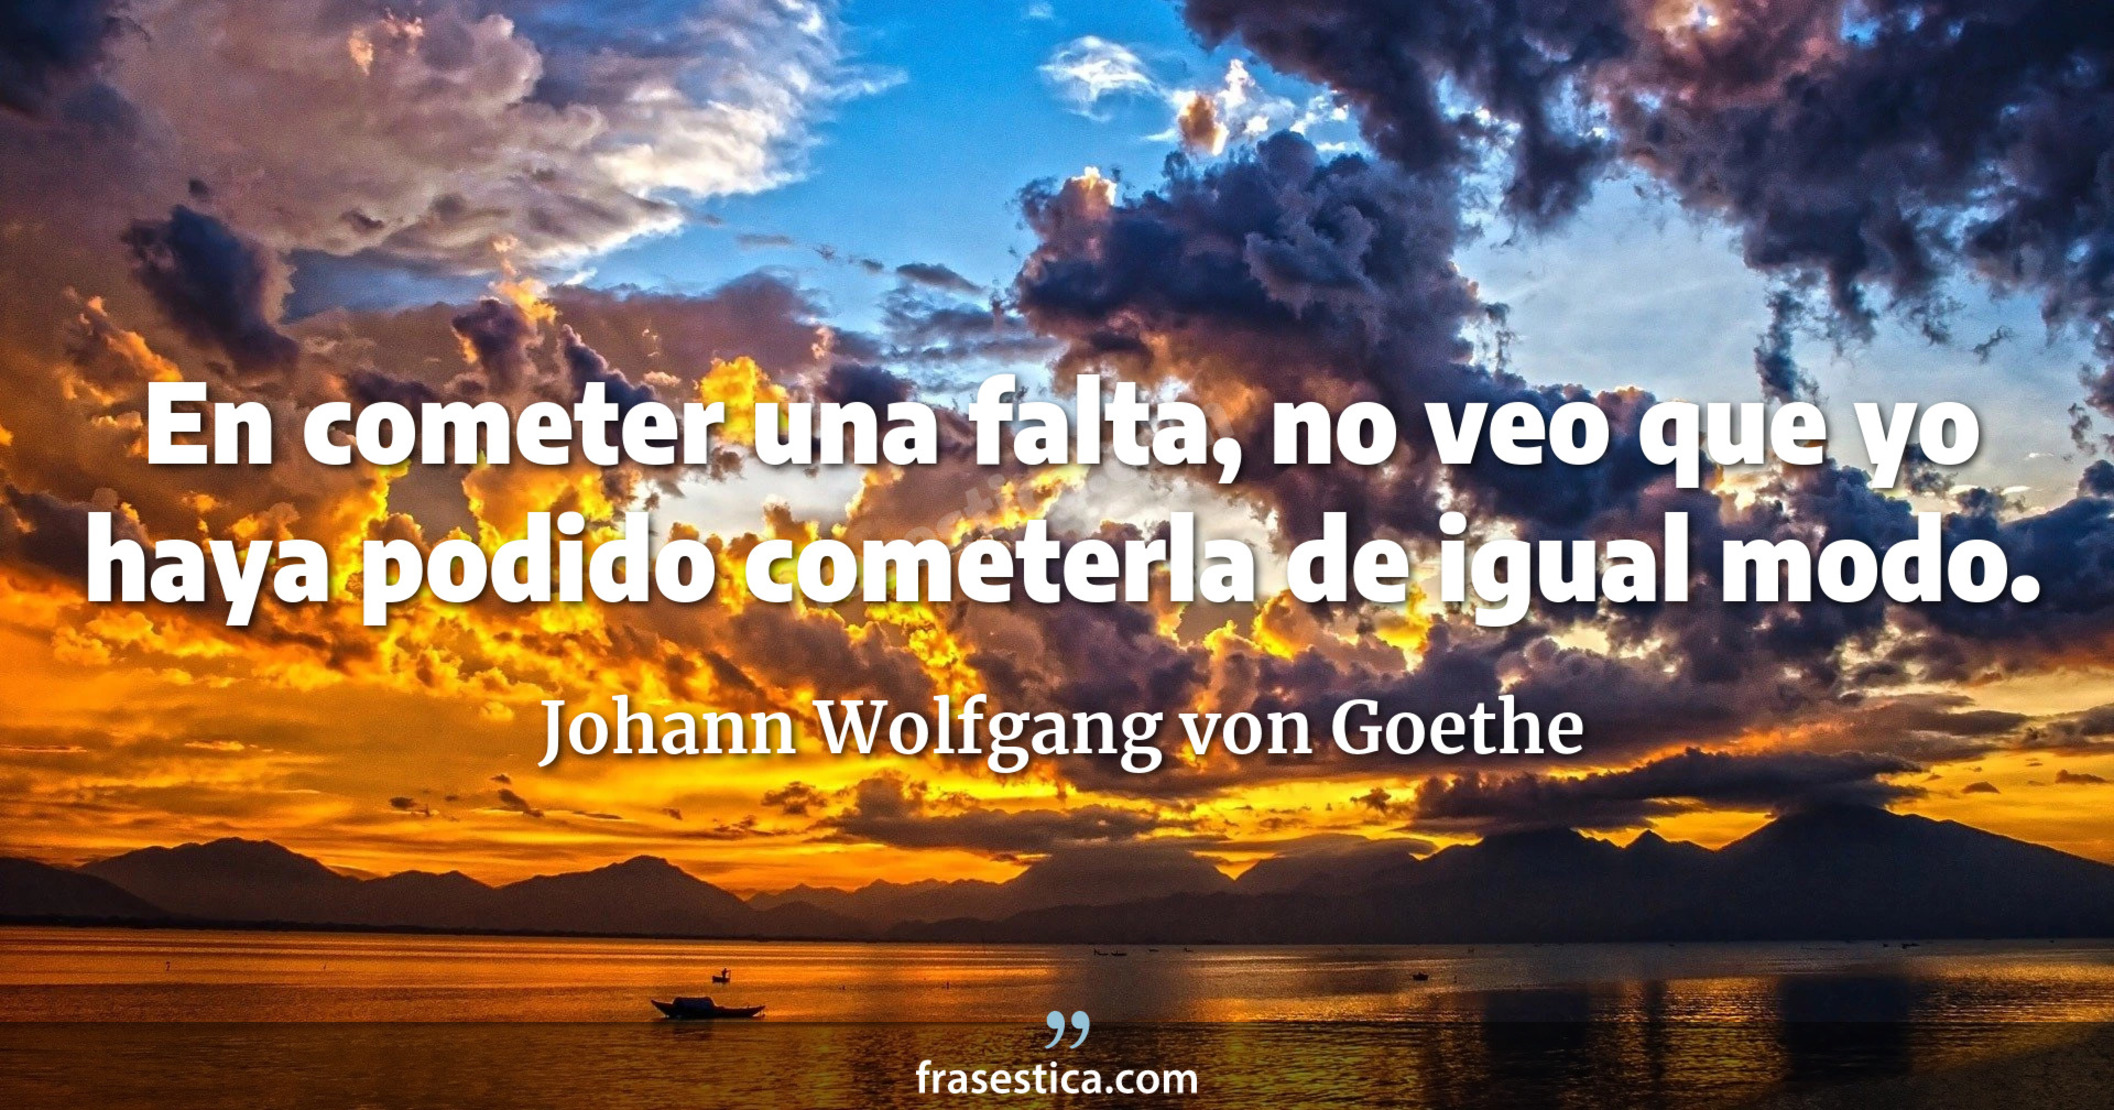 En cometer una falta, no veo que yo haya podido cometerla de igual modo. - Johann Wolfgang von Goethe